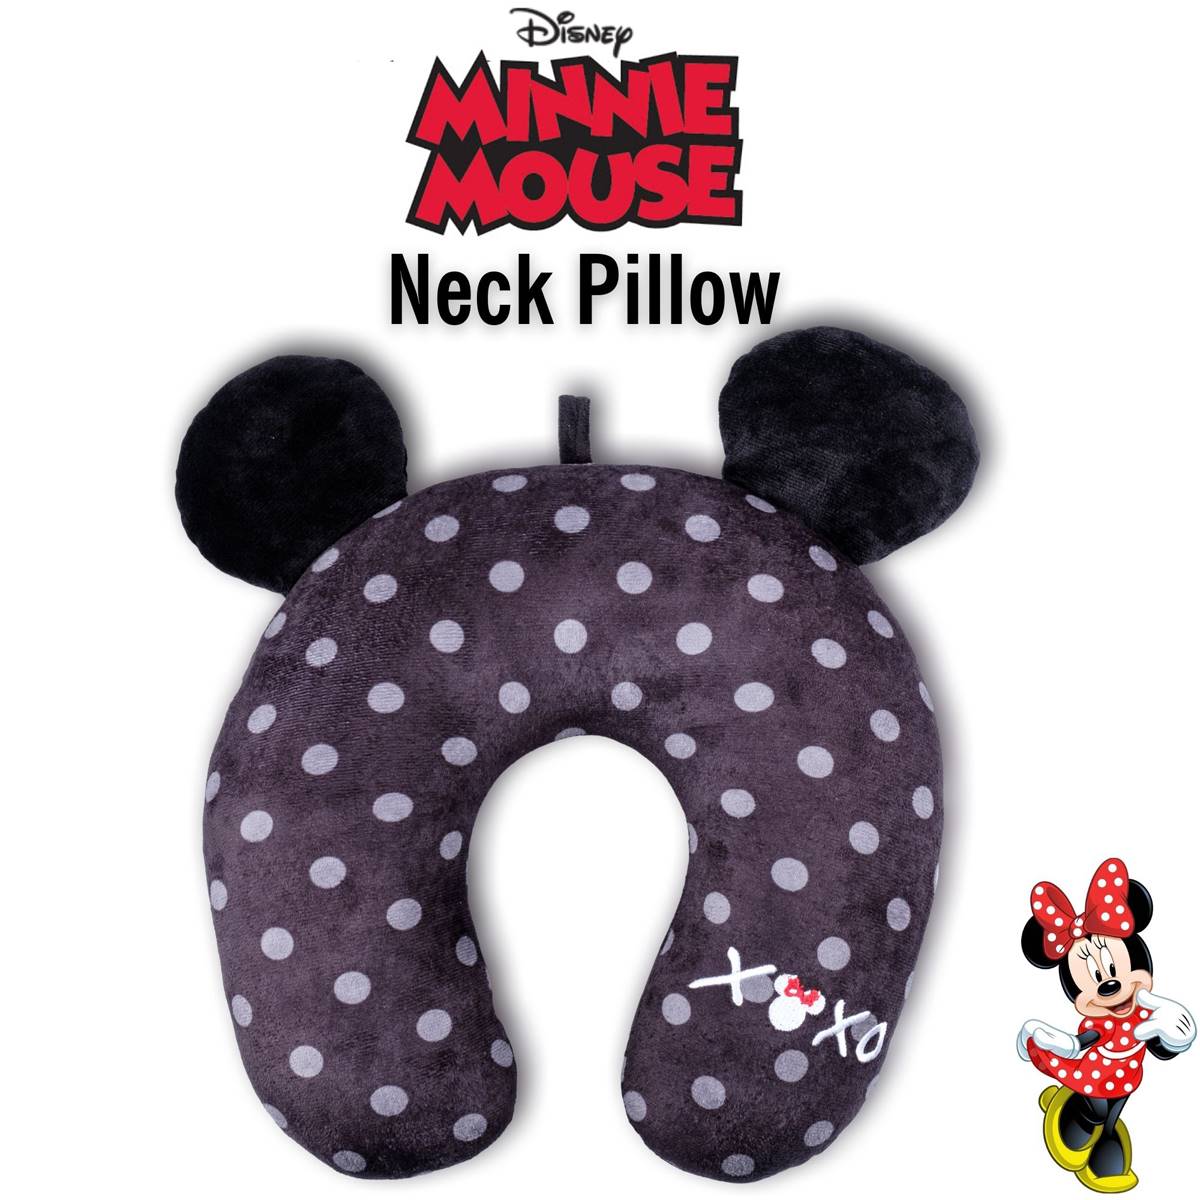 FUL Minnie Mouse Polka Dot XOXO Travel Neck Pillow